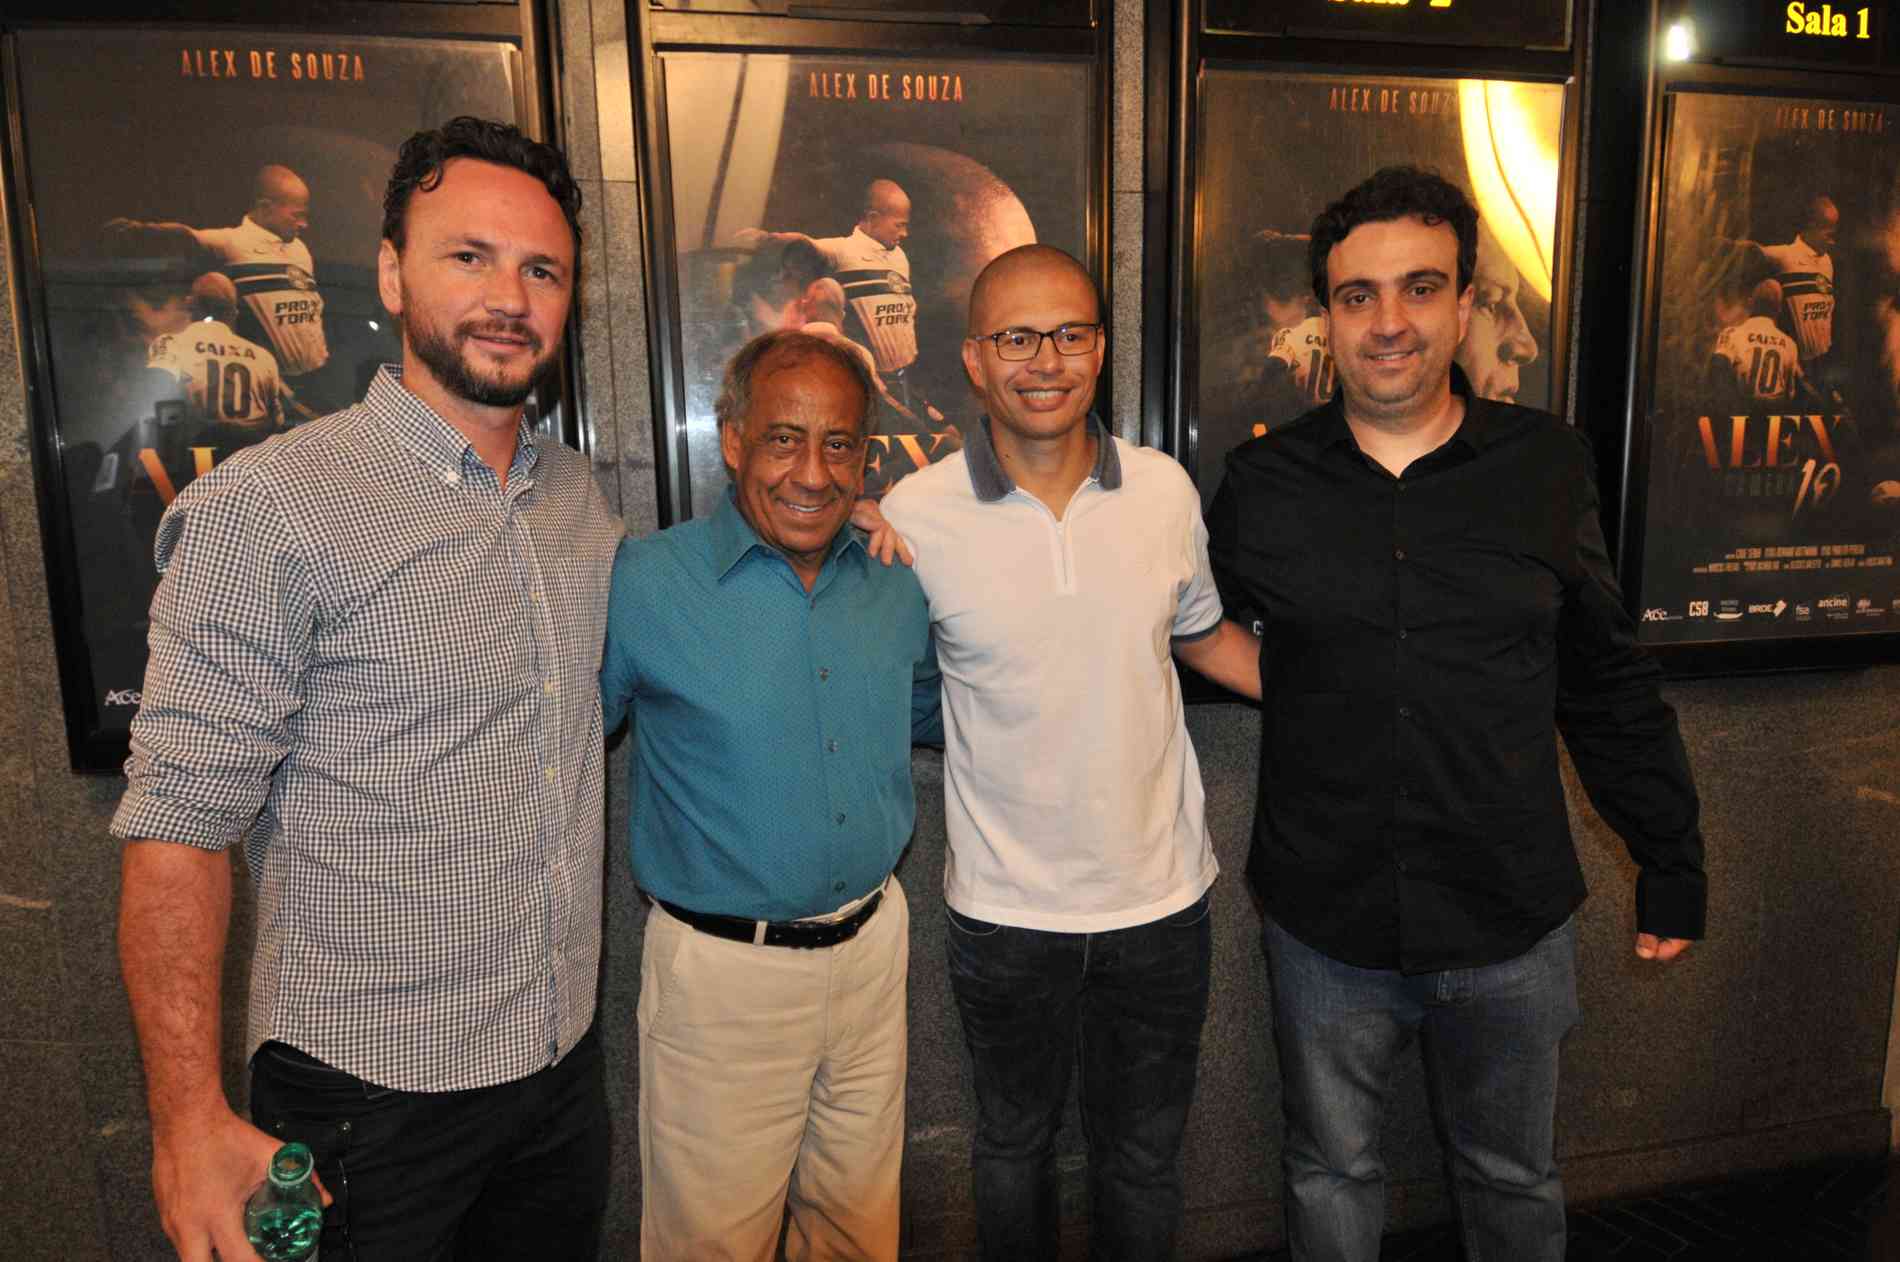 Imagens do evento que reuniu ex-jogadores e o craque no Cine Belas Artes